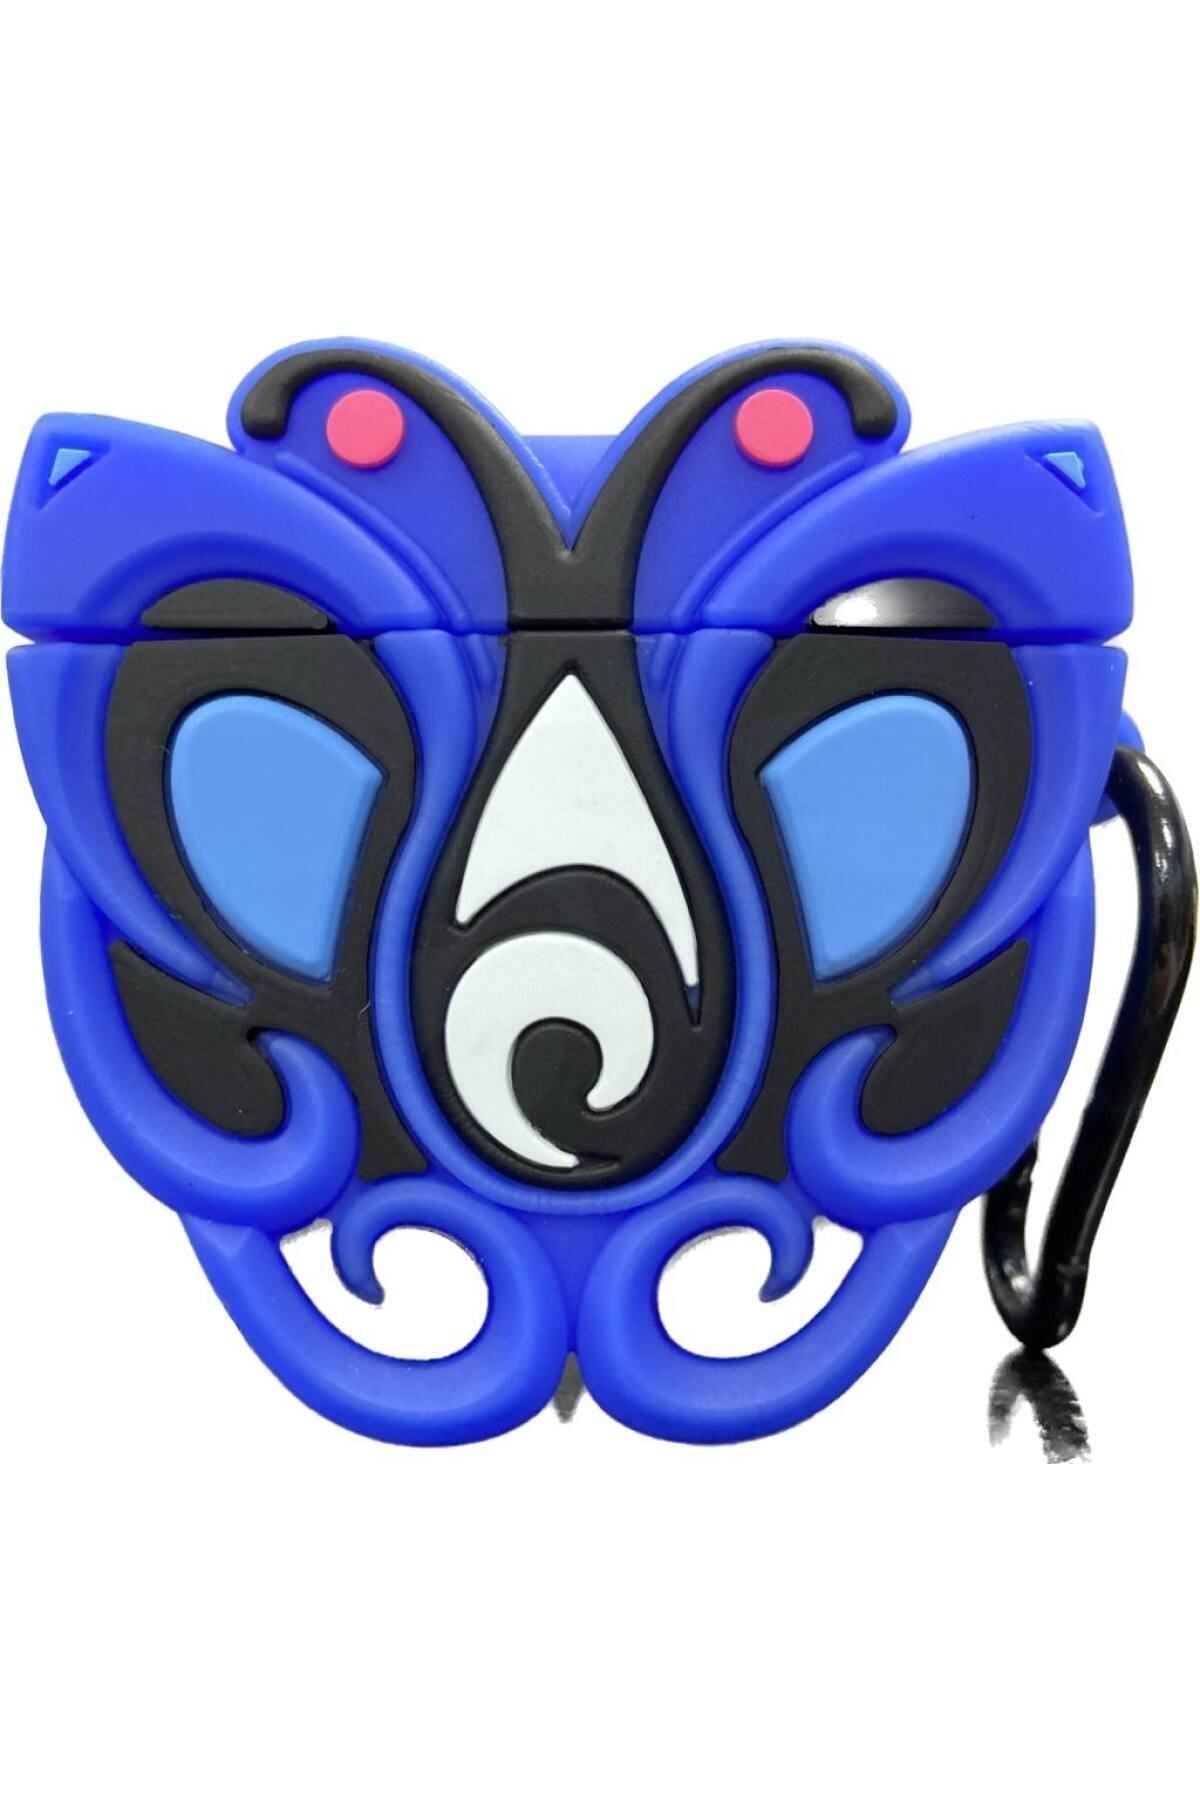 HappyCase Air pods 1 ve 2. nesil Uyumlu Kulaklık Koruyucu 3D Silikon Kılıf mavi kelebek